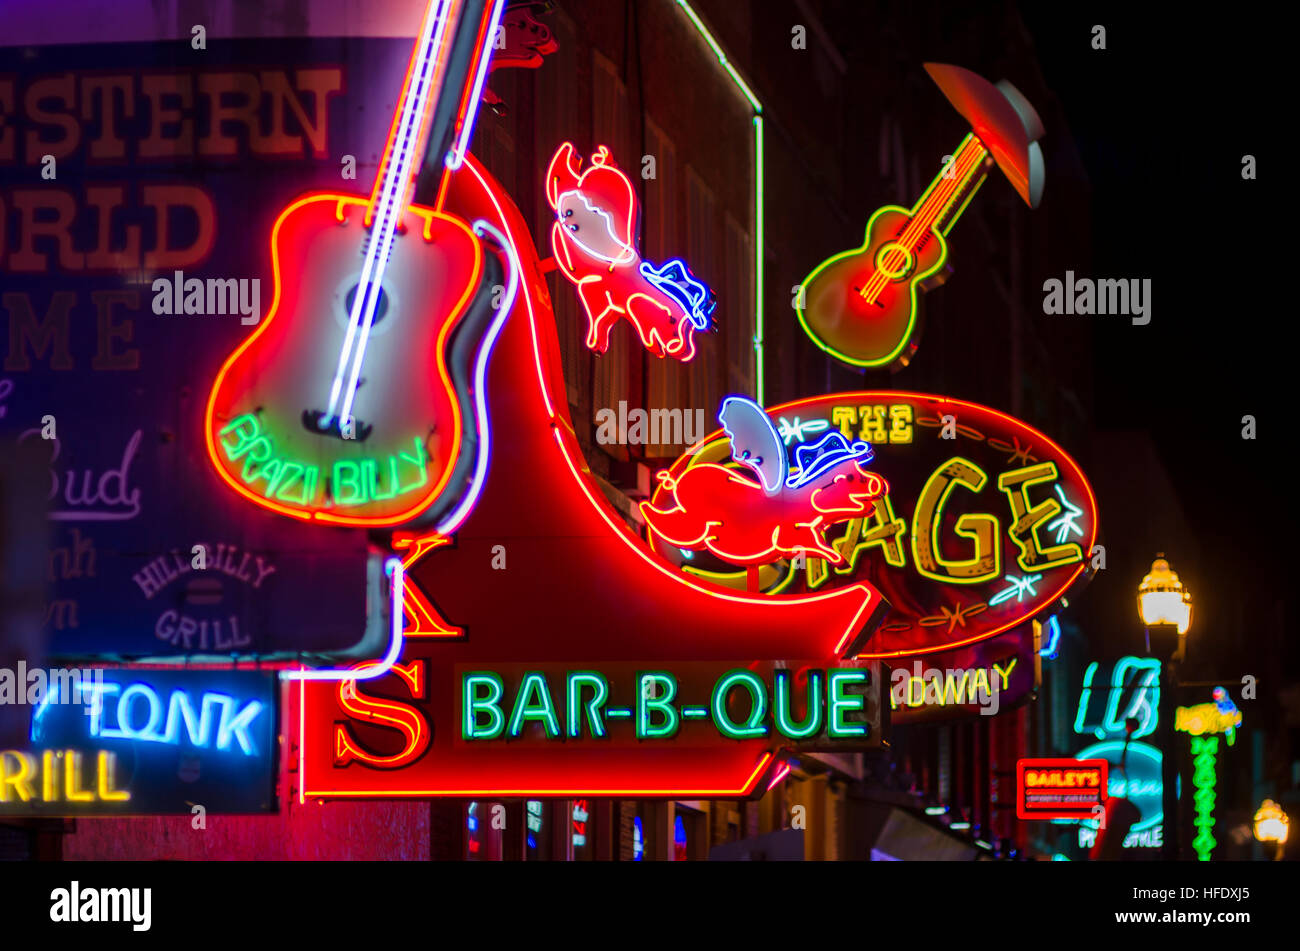 NASHVILLE - 10 juillet 2014 : des enseignes au néon lumineux de la ville, scène bar honky tonk line le Broadway de divertissement. Banque D'Images